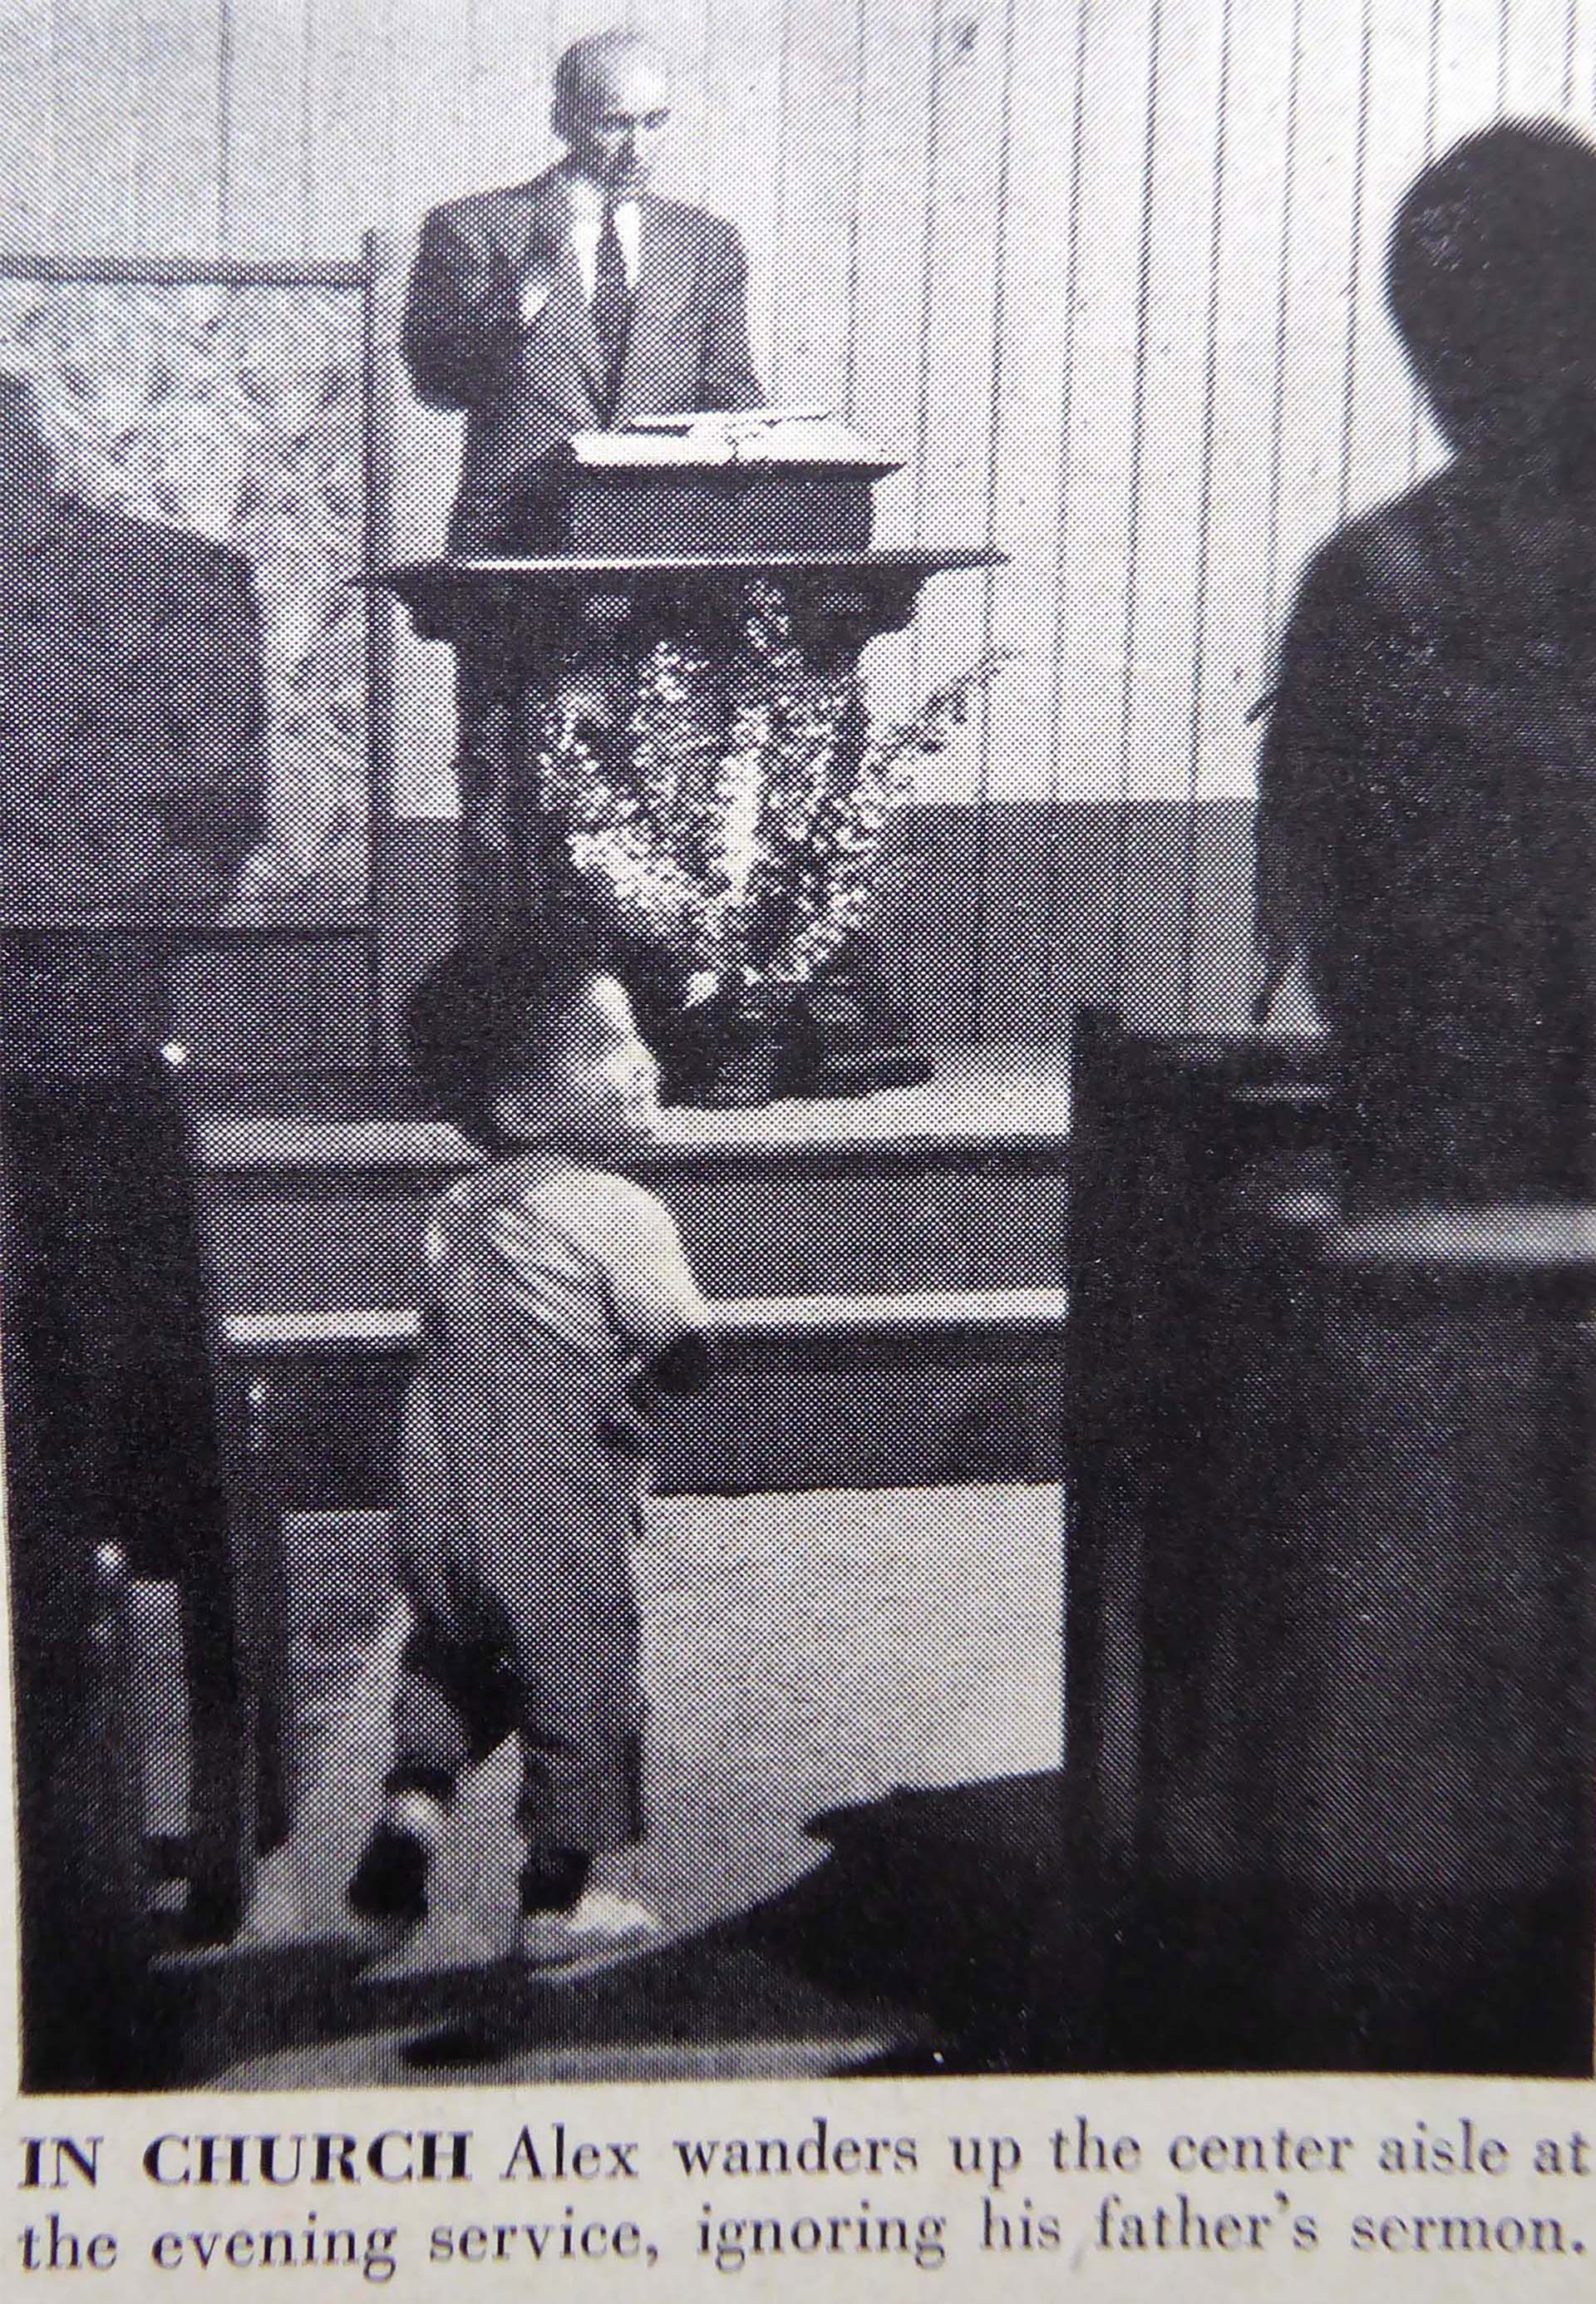 Alexander camina entre los bancos de la Iglesia mientras su padre predica